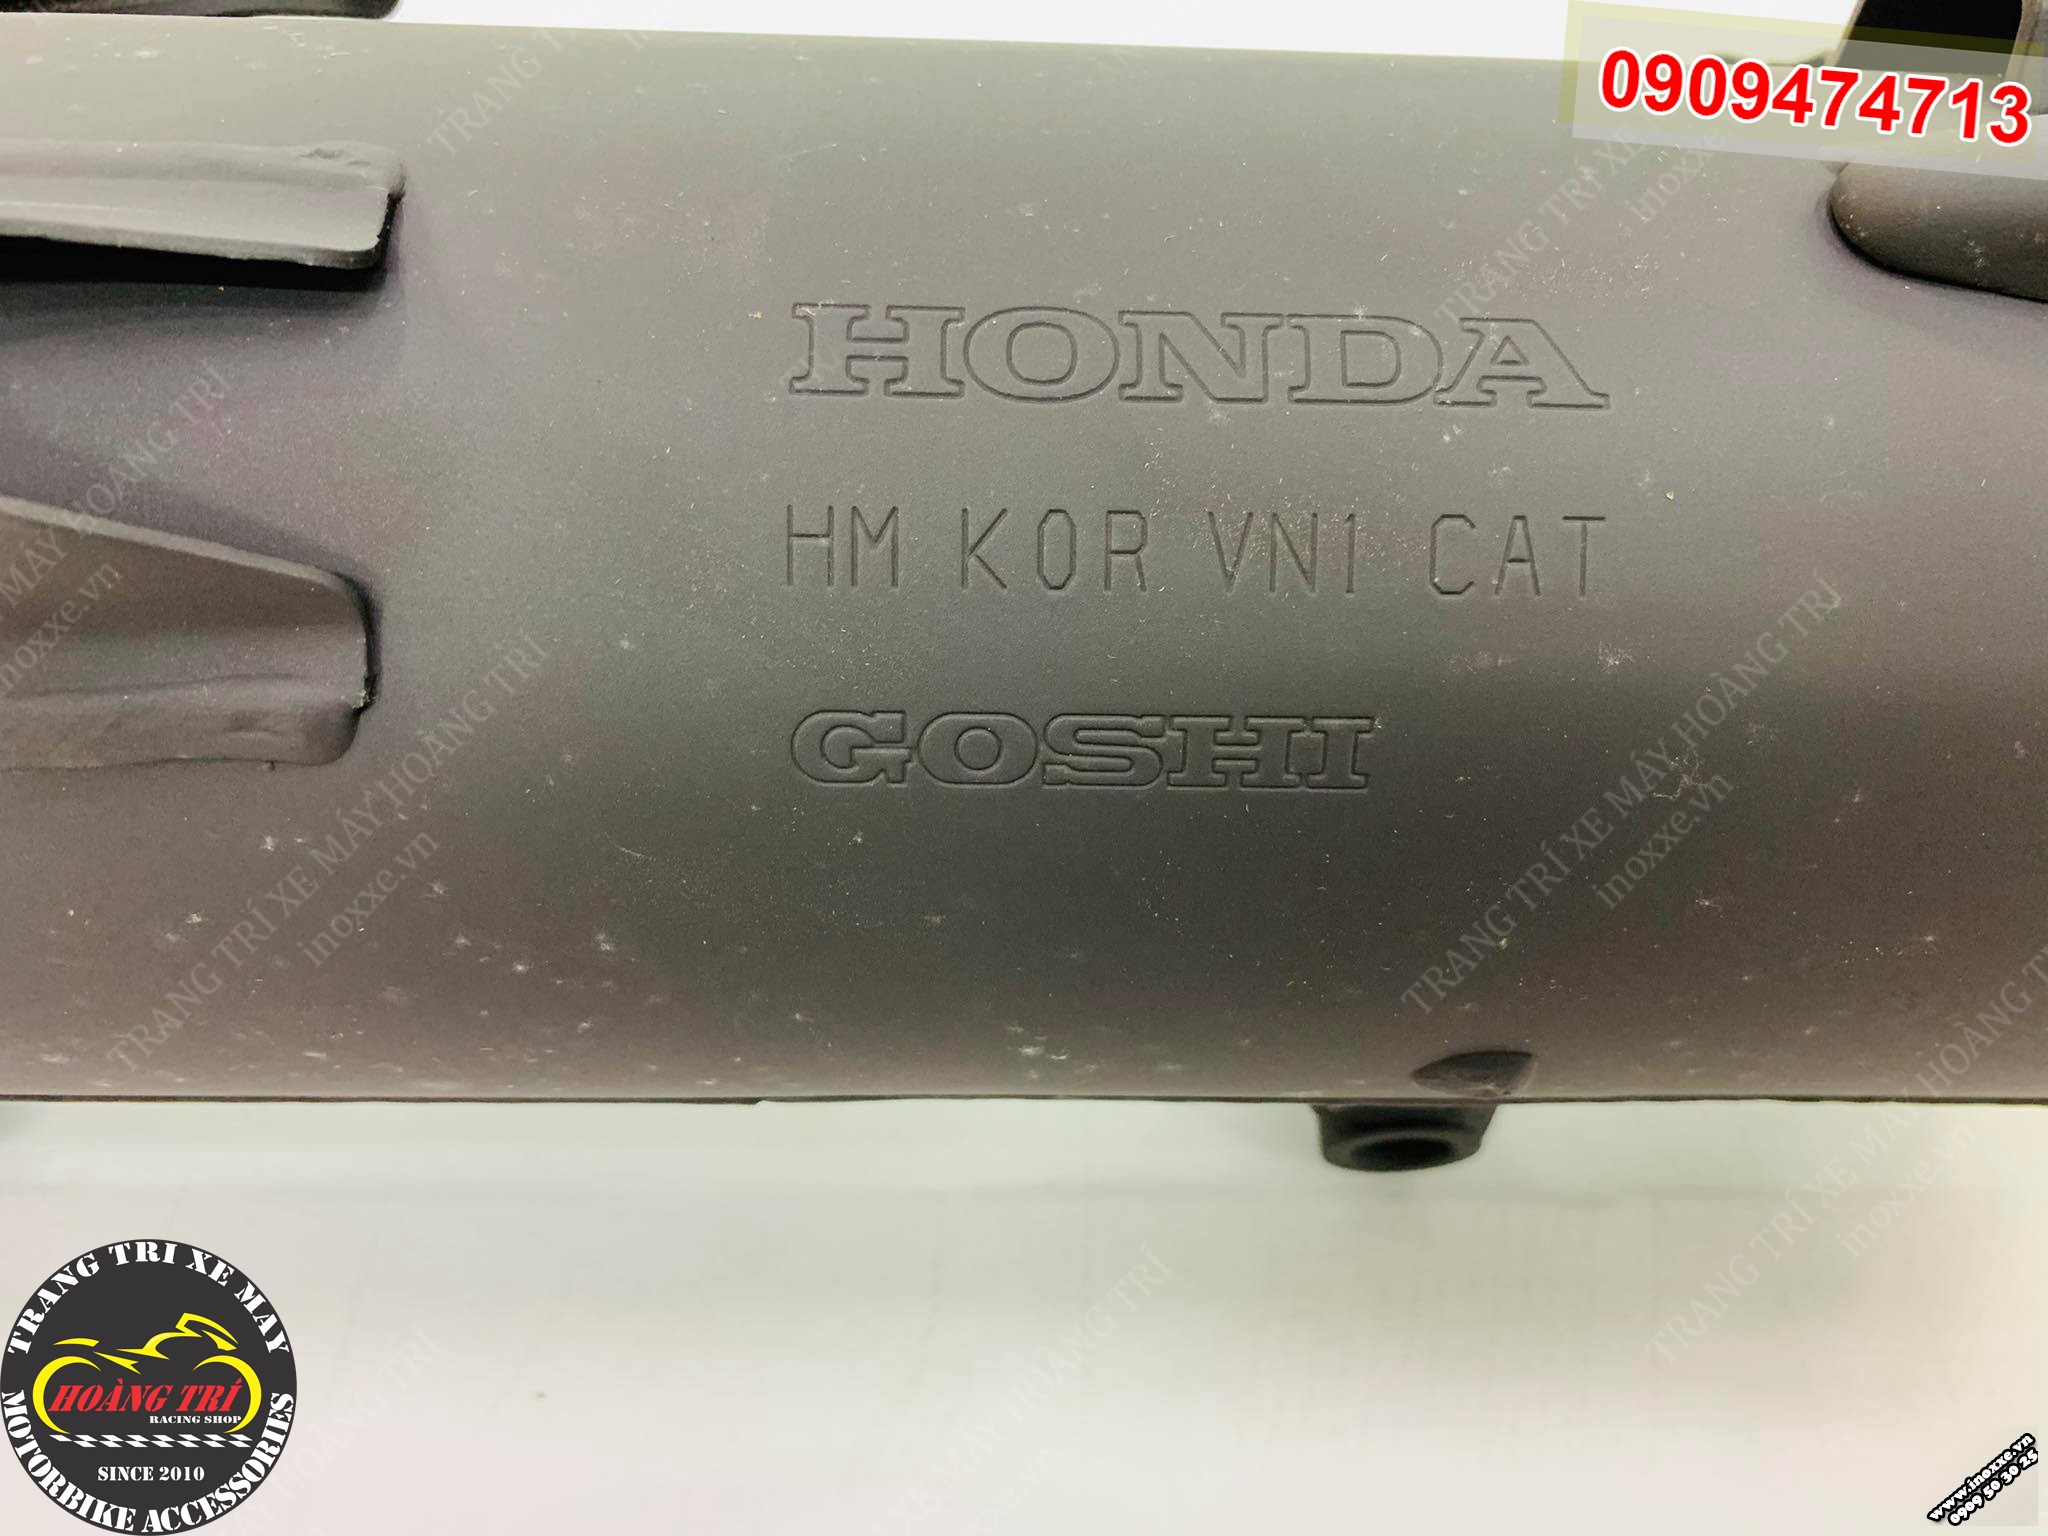 Chữ Honda cùng thông tin sản phẩm được in rõ nét